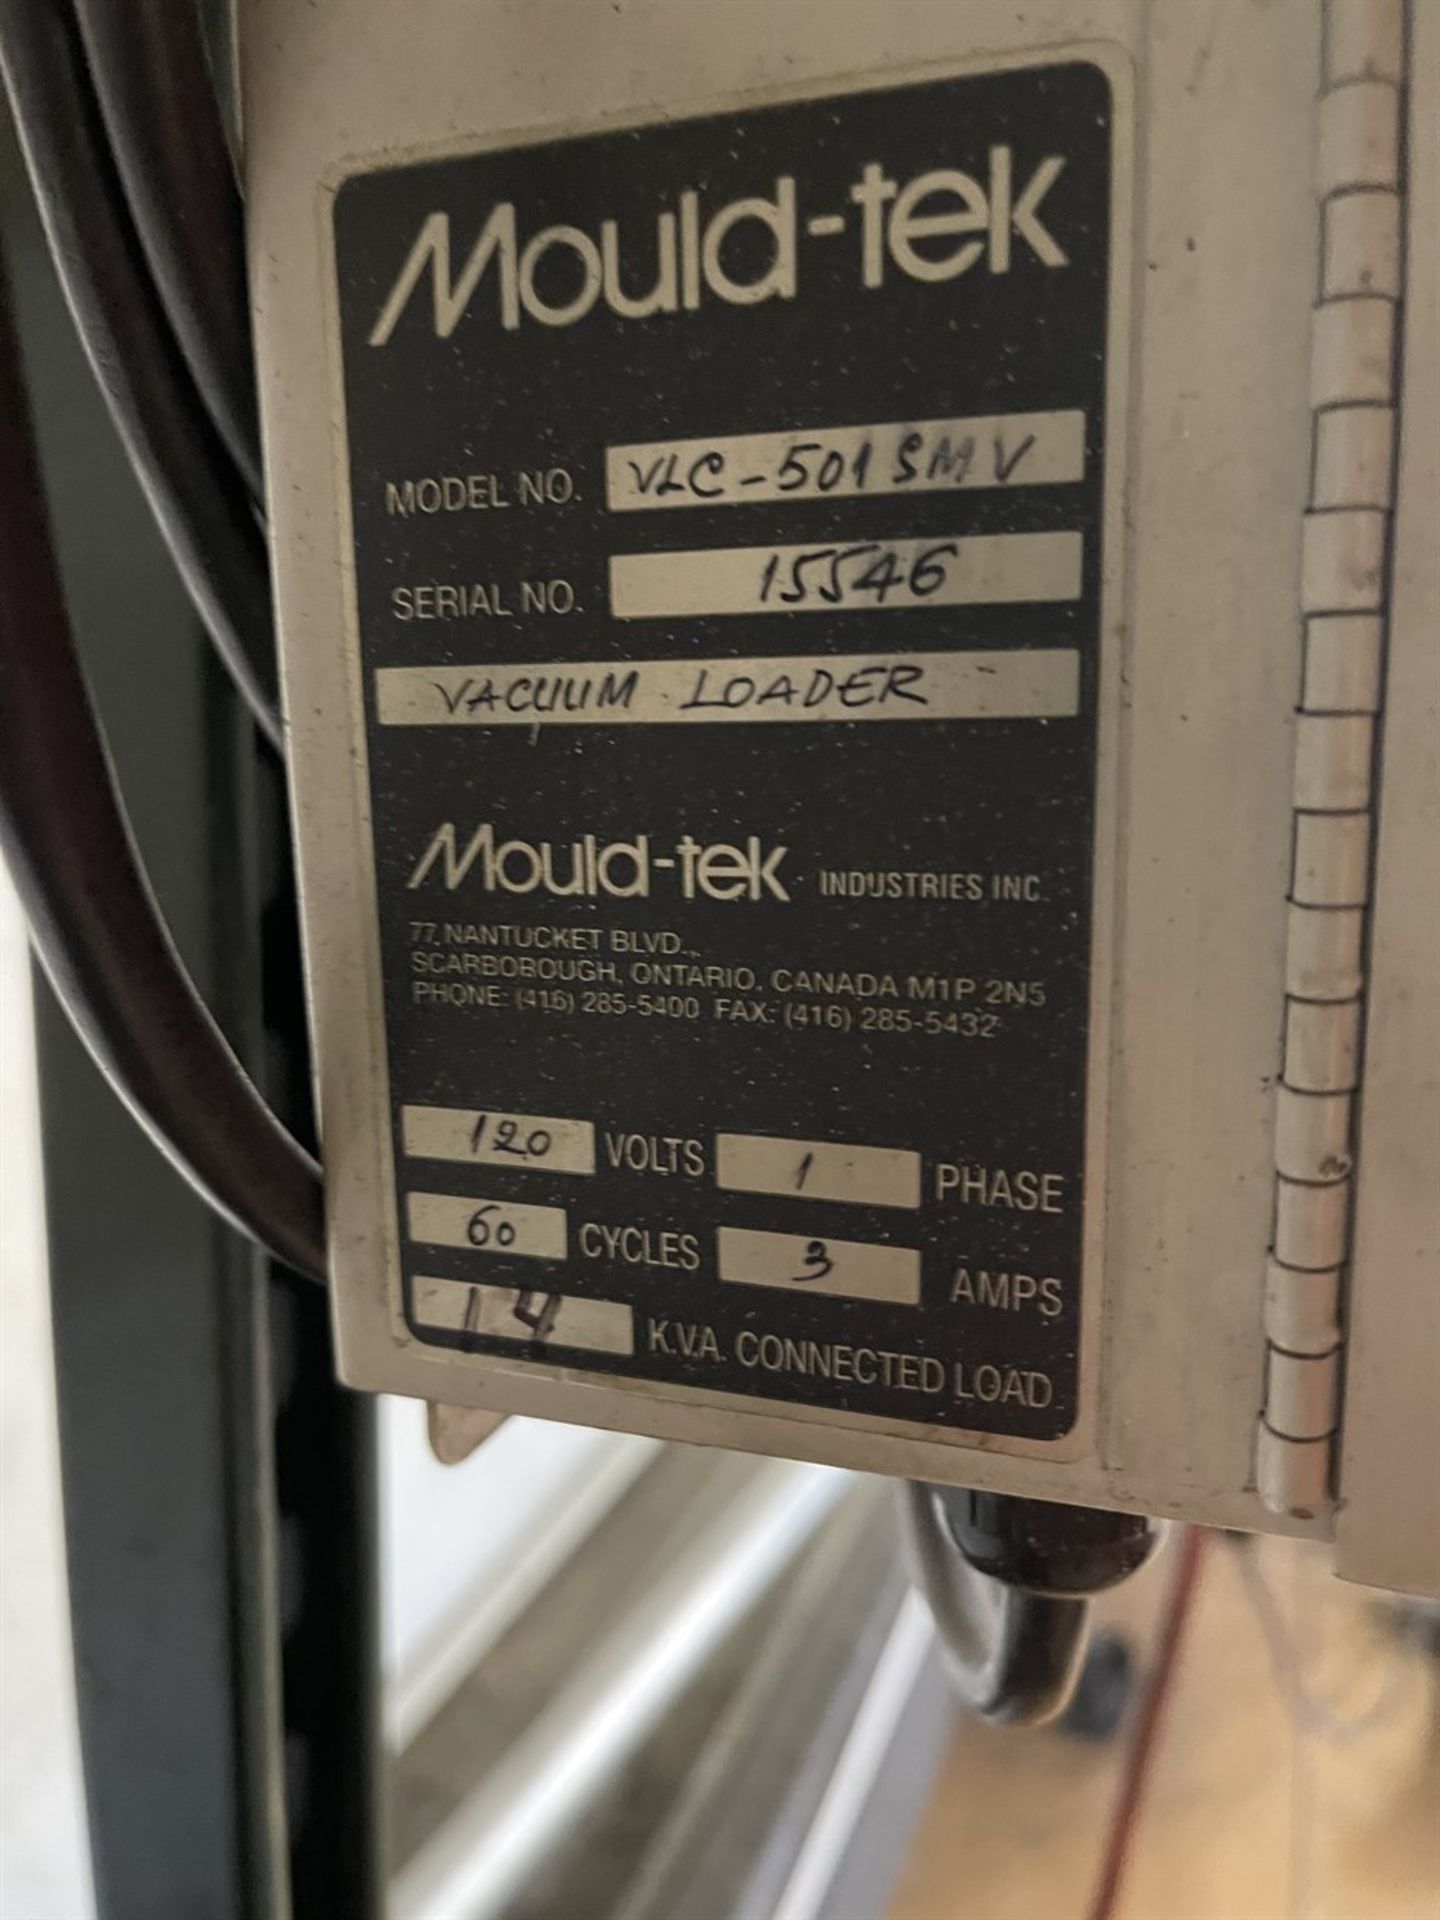 MOULD-TEK Vacuum Loader w/VLC-501SMV Control, s/n 15546 - Image 3 of 3